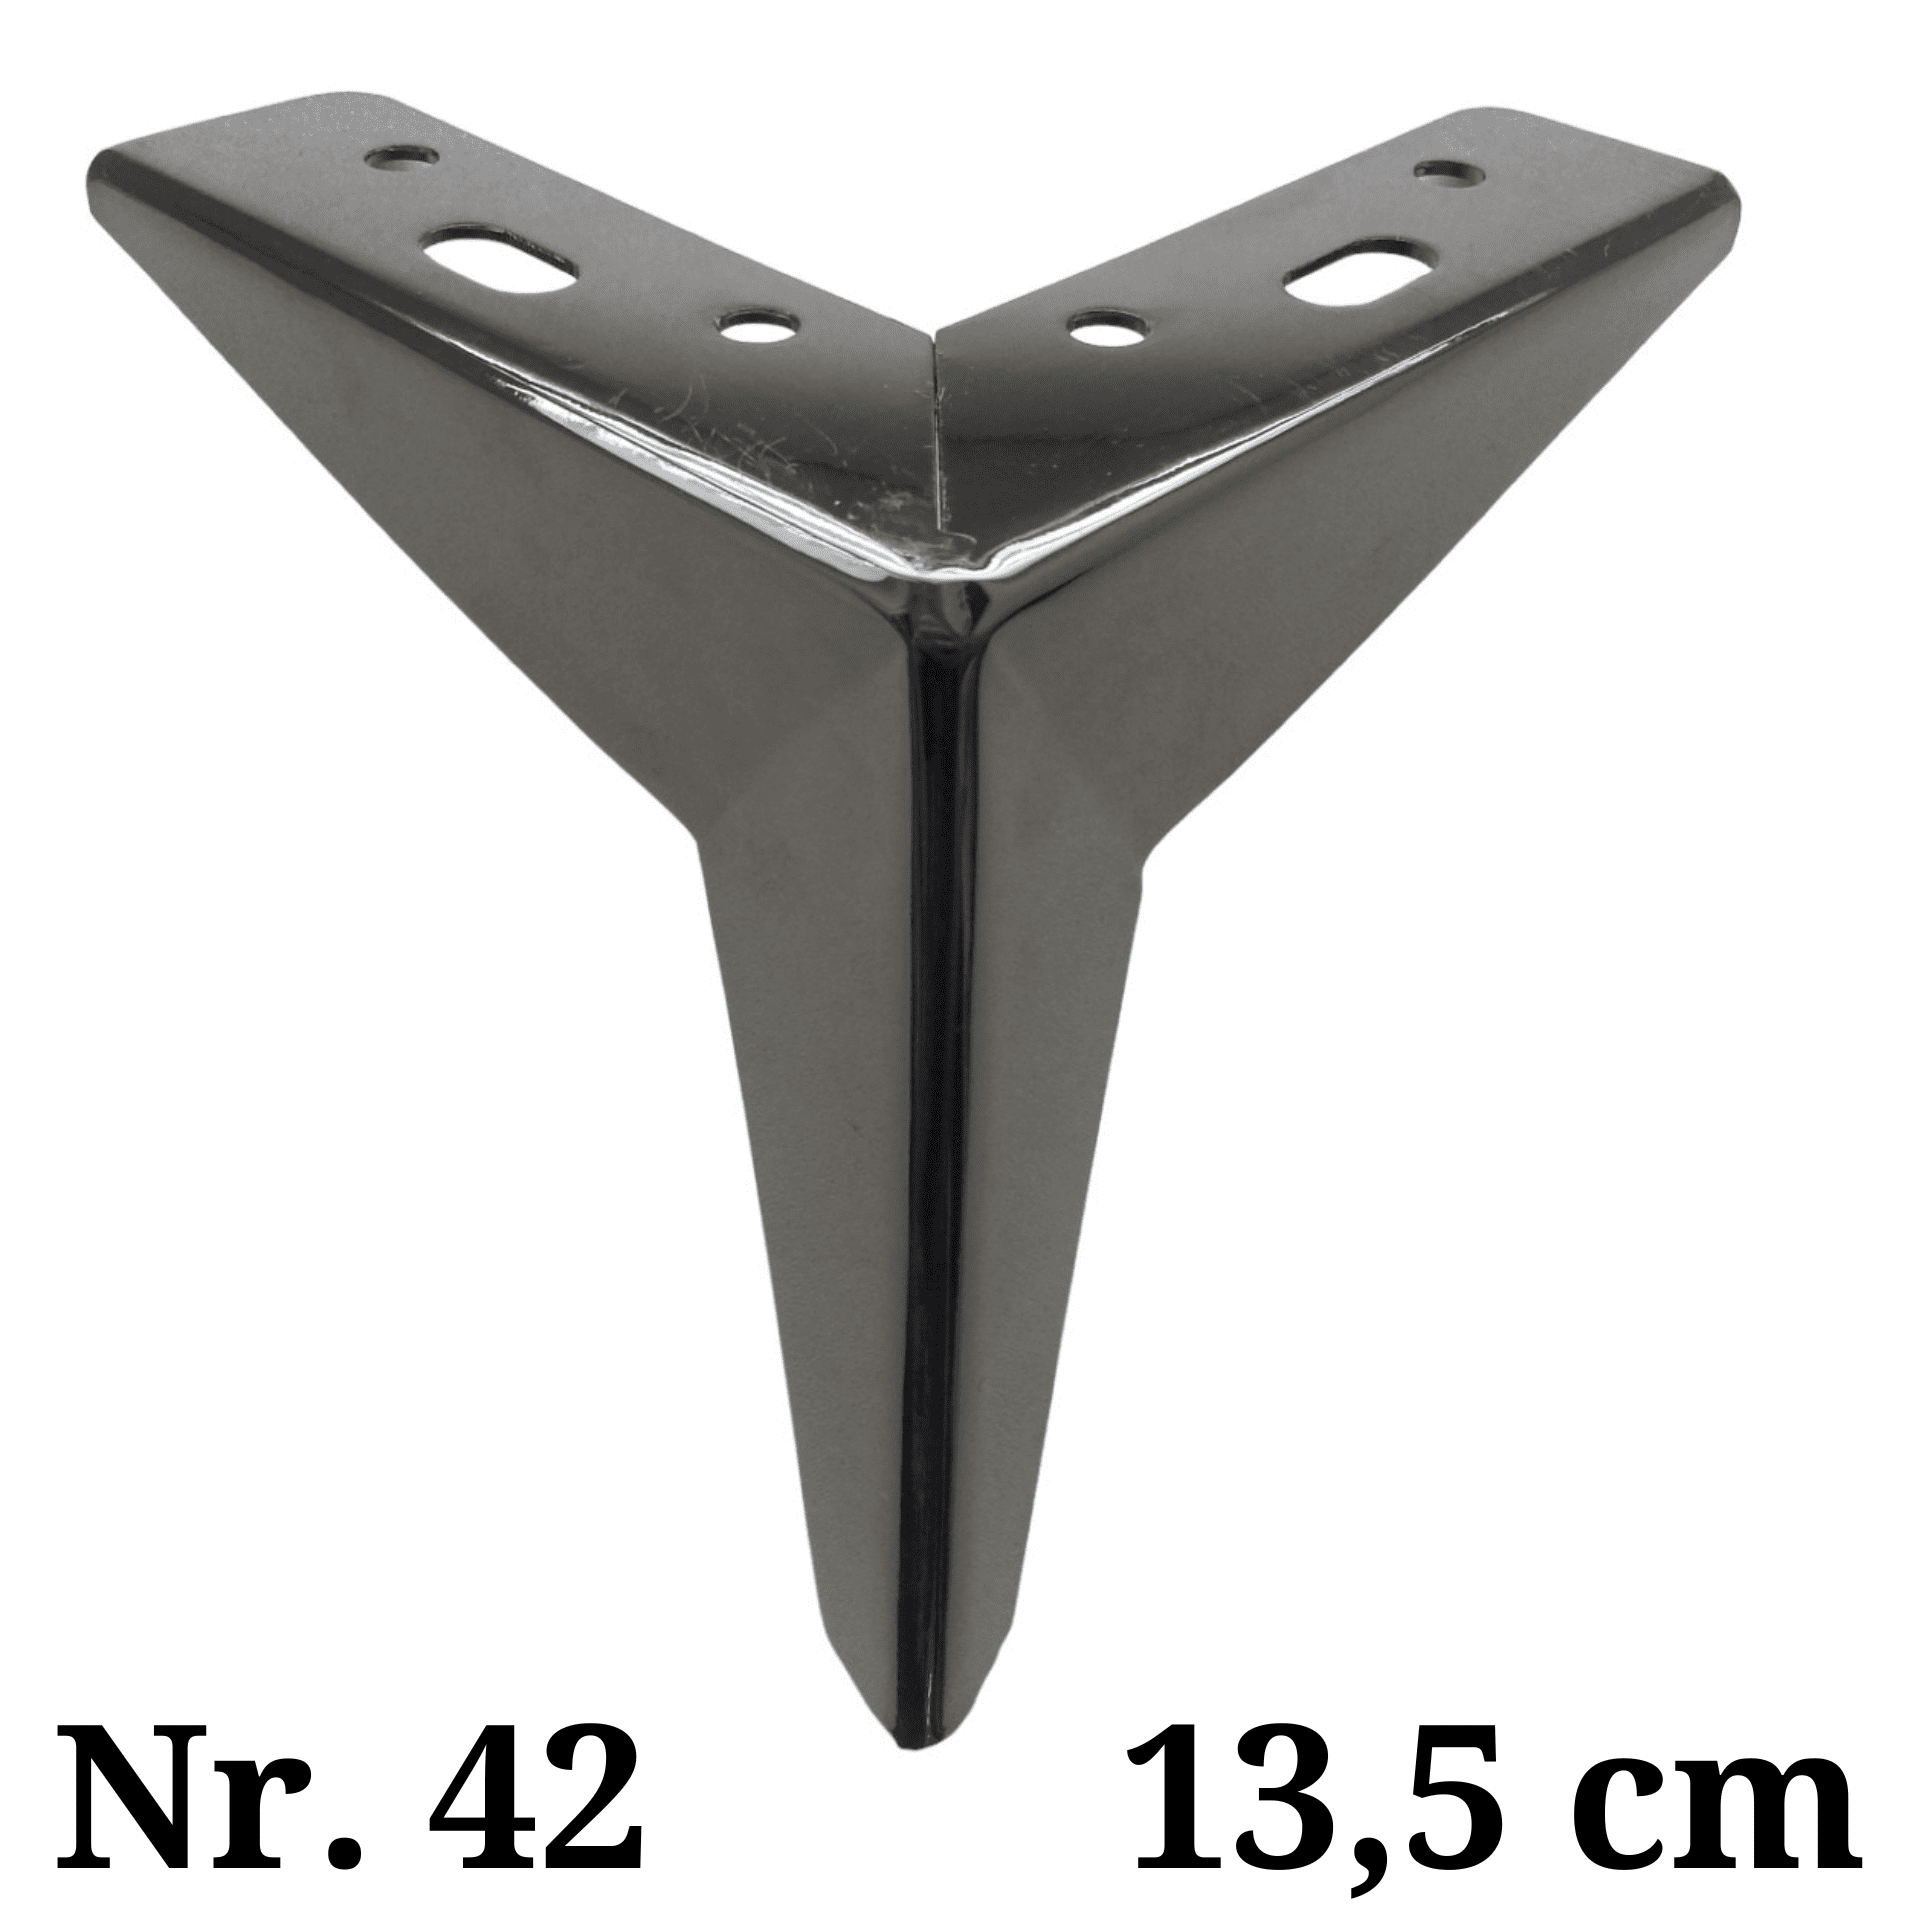 Metalinė kojelė Nr. 42 (Juodas nikelis)